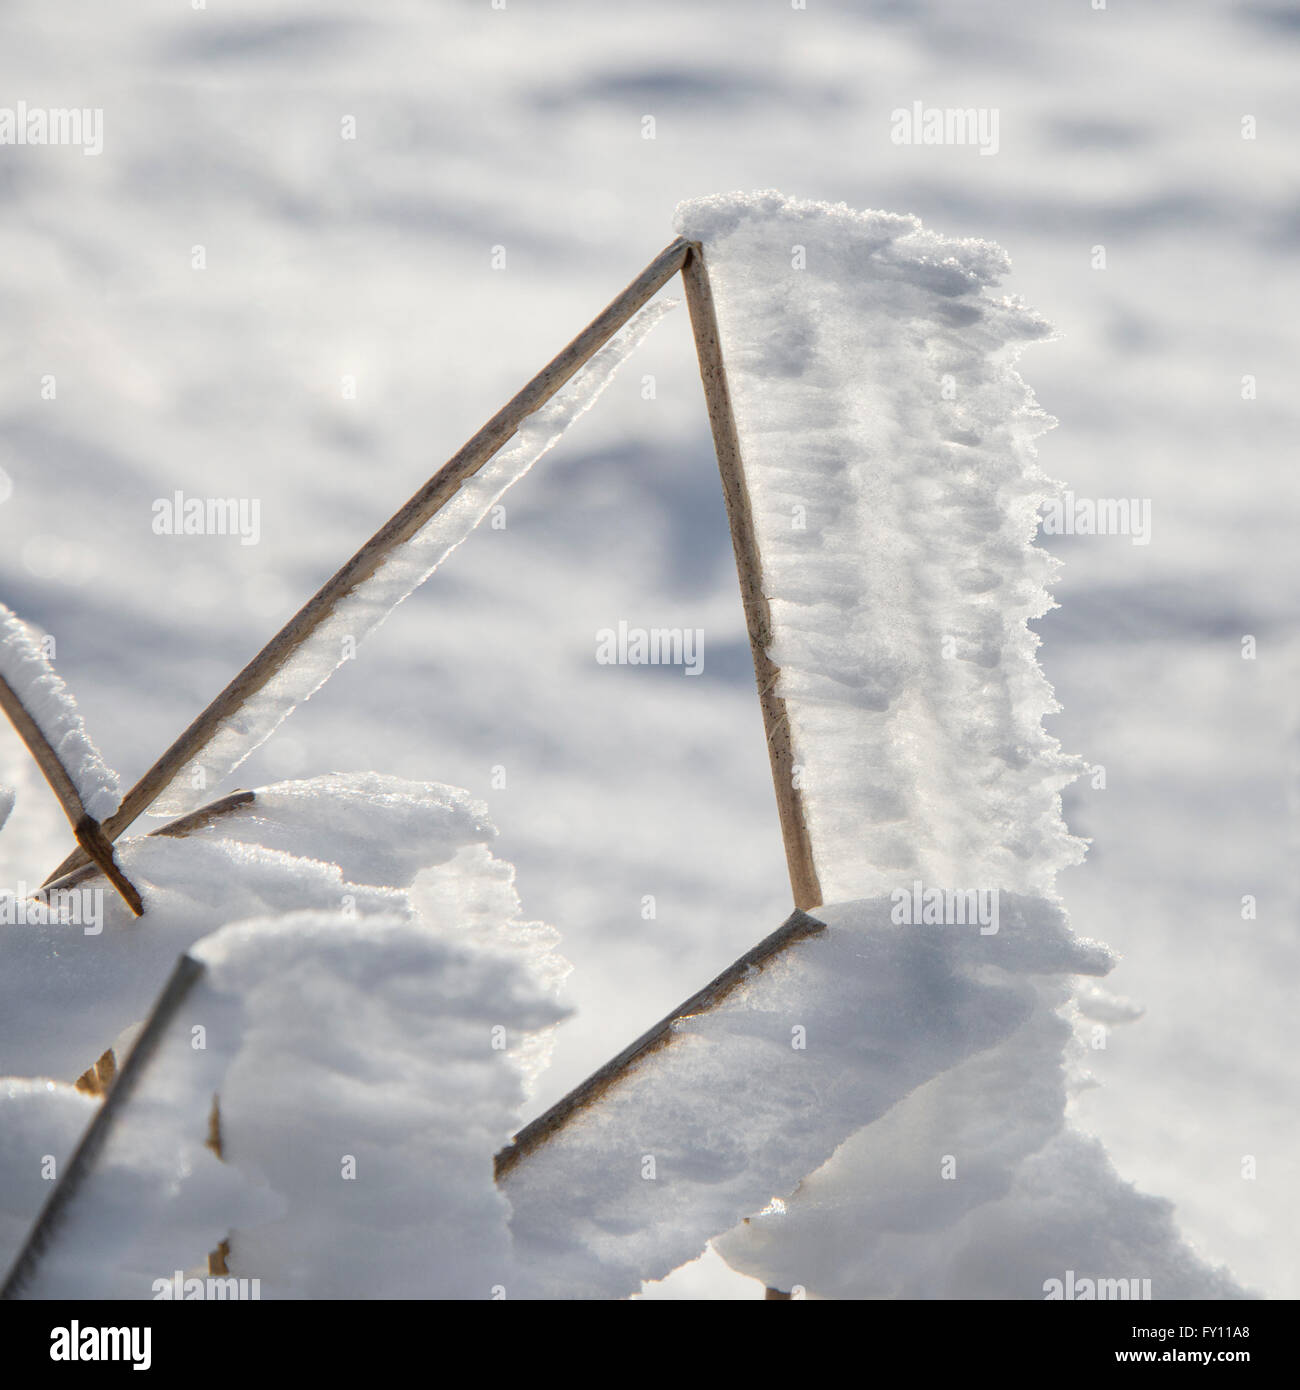 White trasformata per forte gradiente frost / formazione di brina sulla rotta dello stelo di erba rivolti nella stessa direzione a causa del vento in inverno Foto Stock